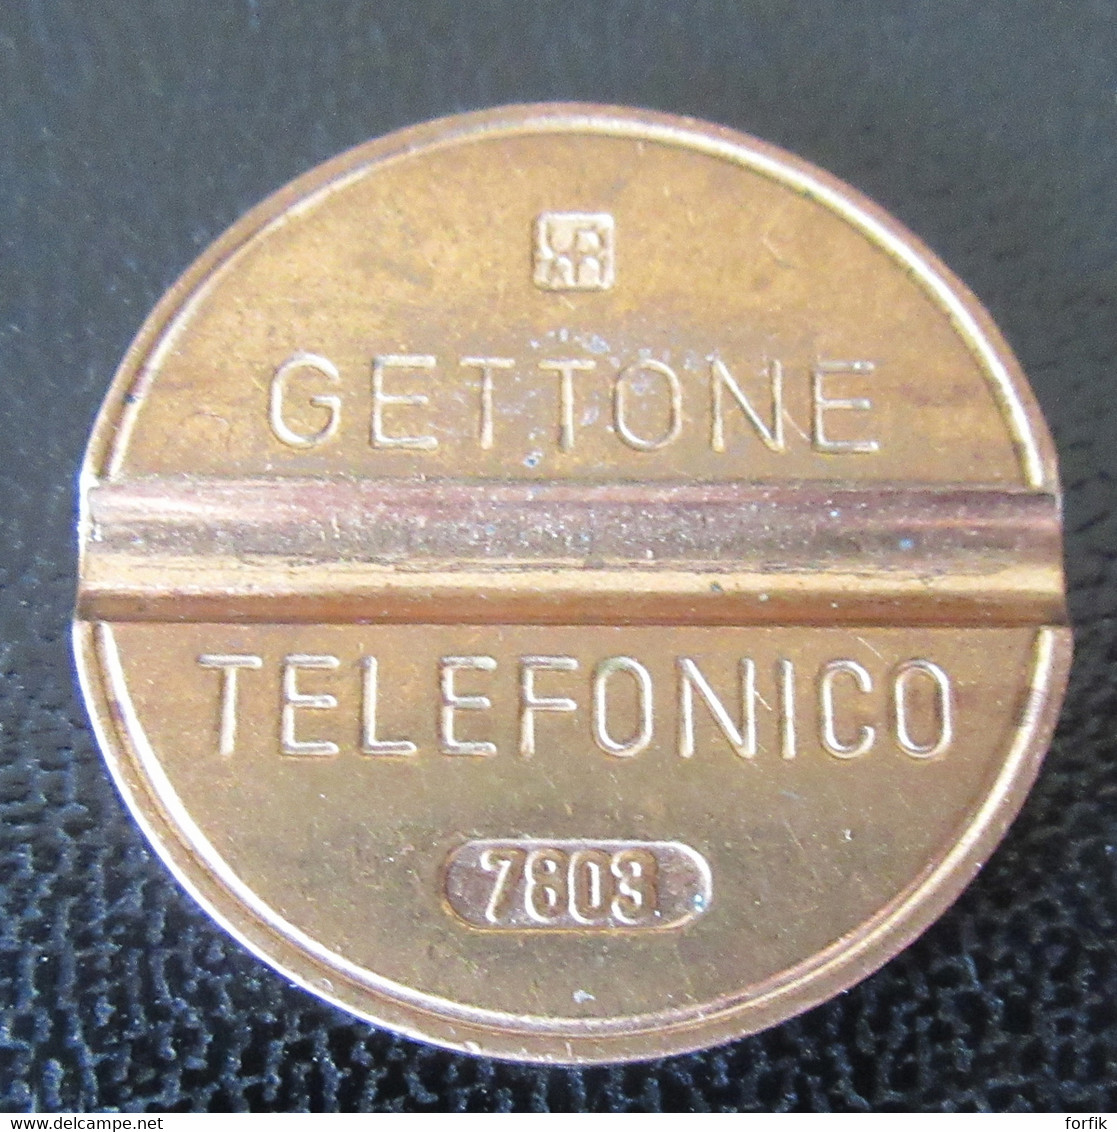 Italie / Italia - Gettone Telefonico (Jeton Téléphonique) En Cuivre - N°7803 - Notgeld